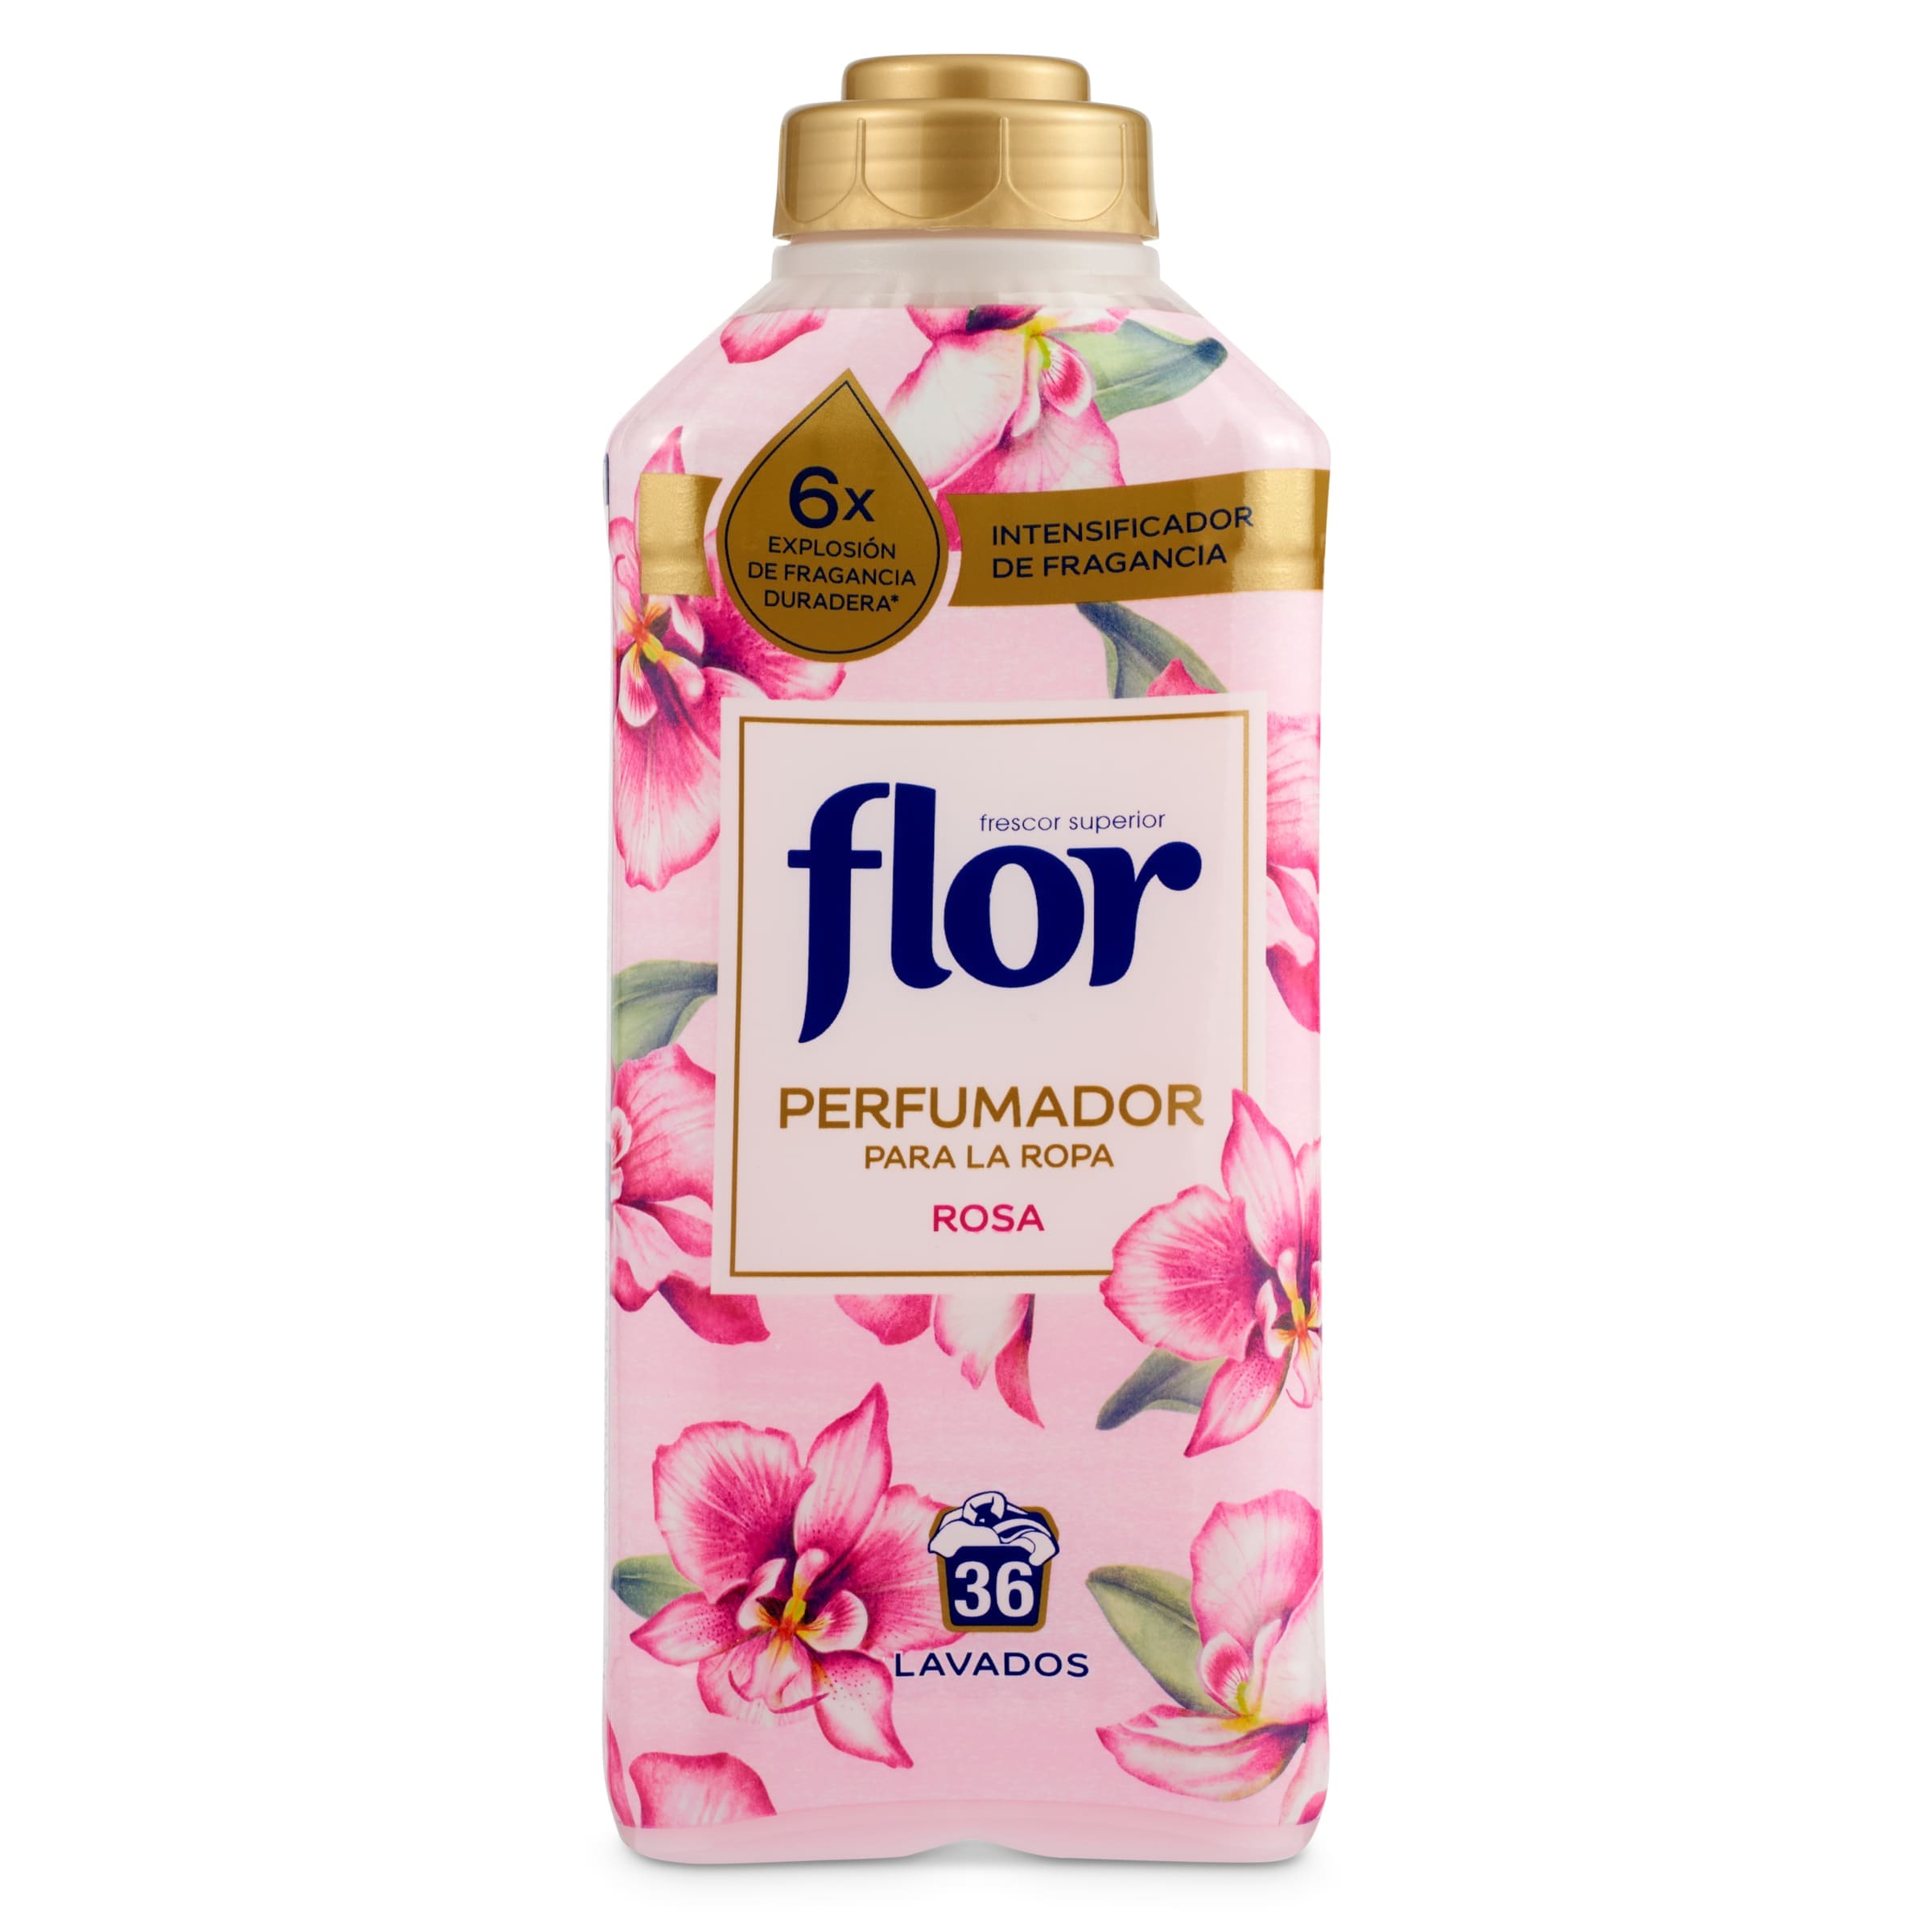 Flor Perfumador para la Ropa Intensificador de Fragancia Rosa - Pack de 2  botellas de 36 lavados